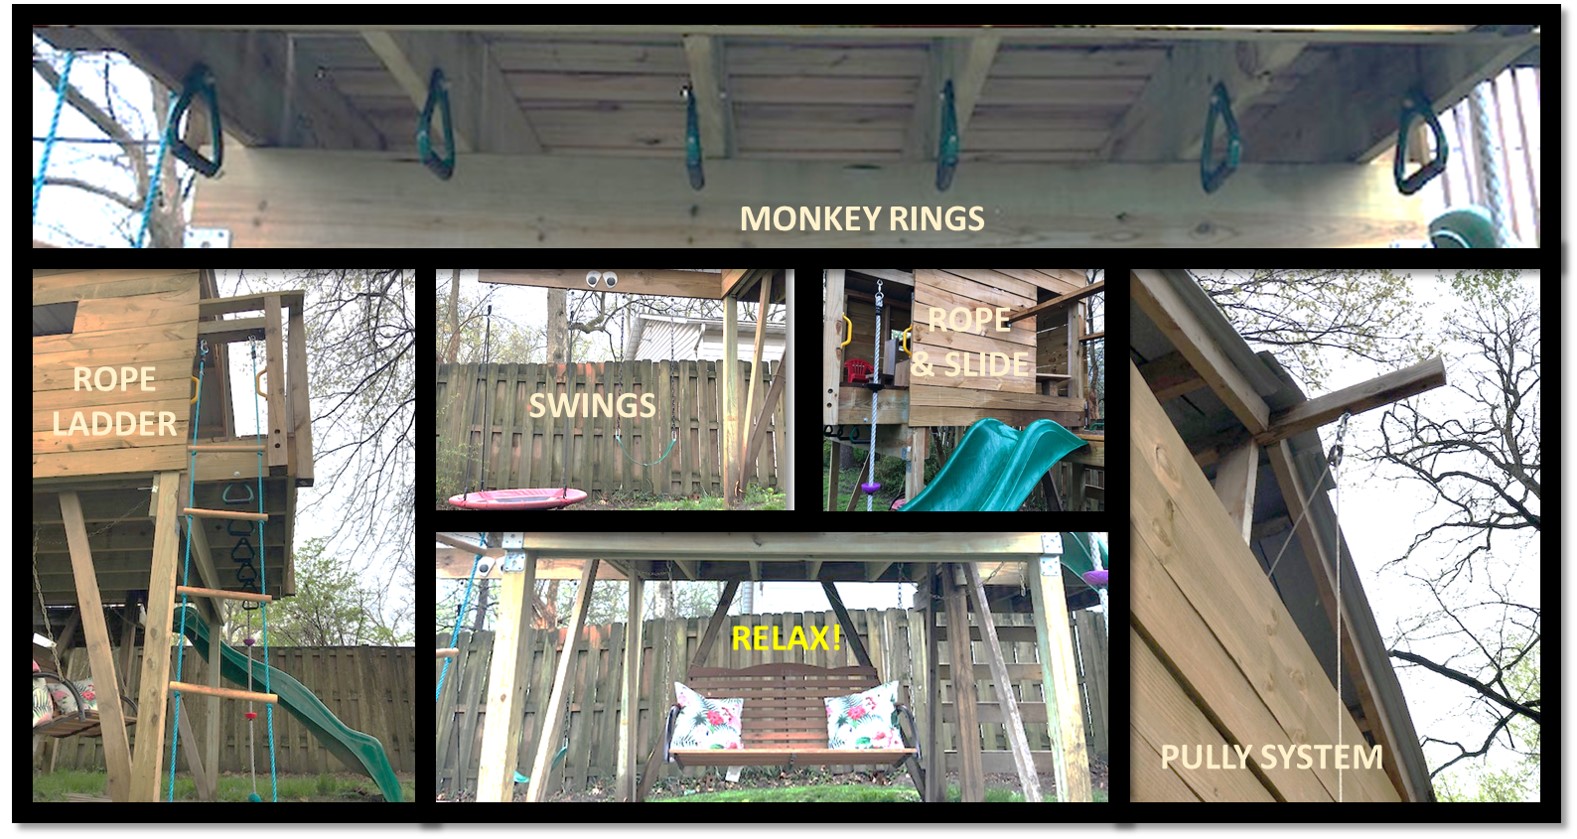 DIY monkey rings, swings, pully, rope ladder and slide